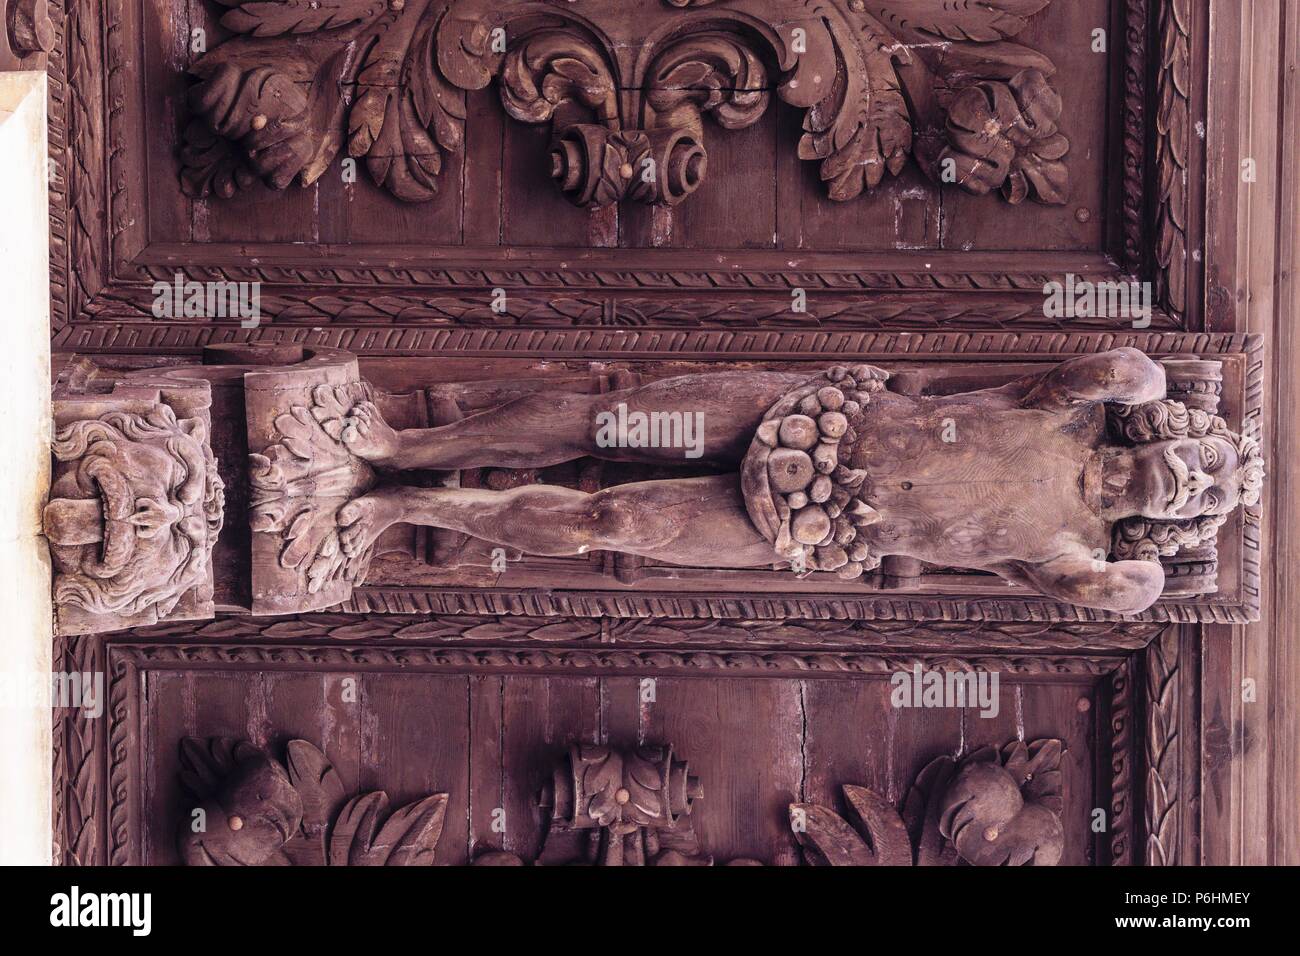 atlante, voladizo de madera en la fachada del ayuntamiento -tallado por el escultor Gabriel Torres Cladera en 1680-, plaza de Cort, Palma, mallorca, islas baleares, Spain, europa. Stock Photo